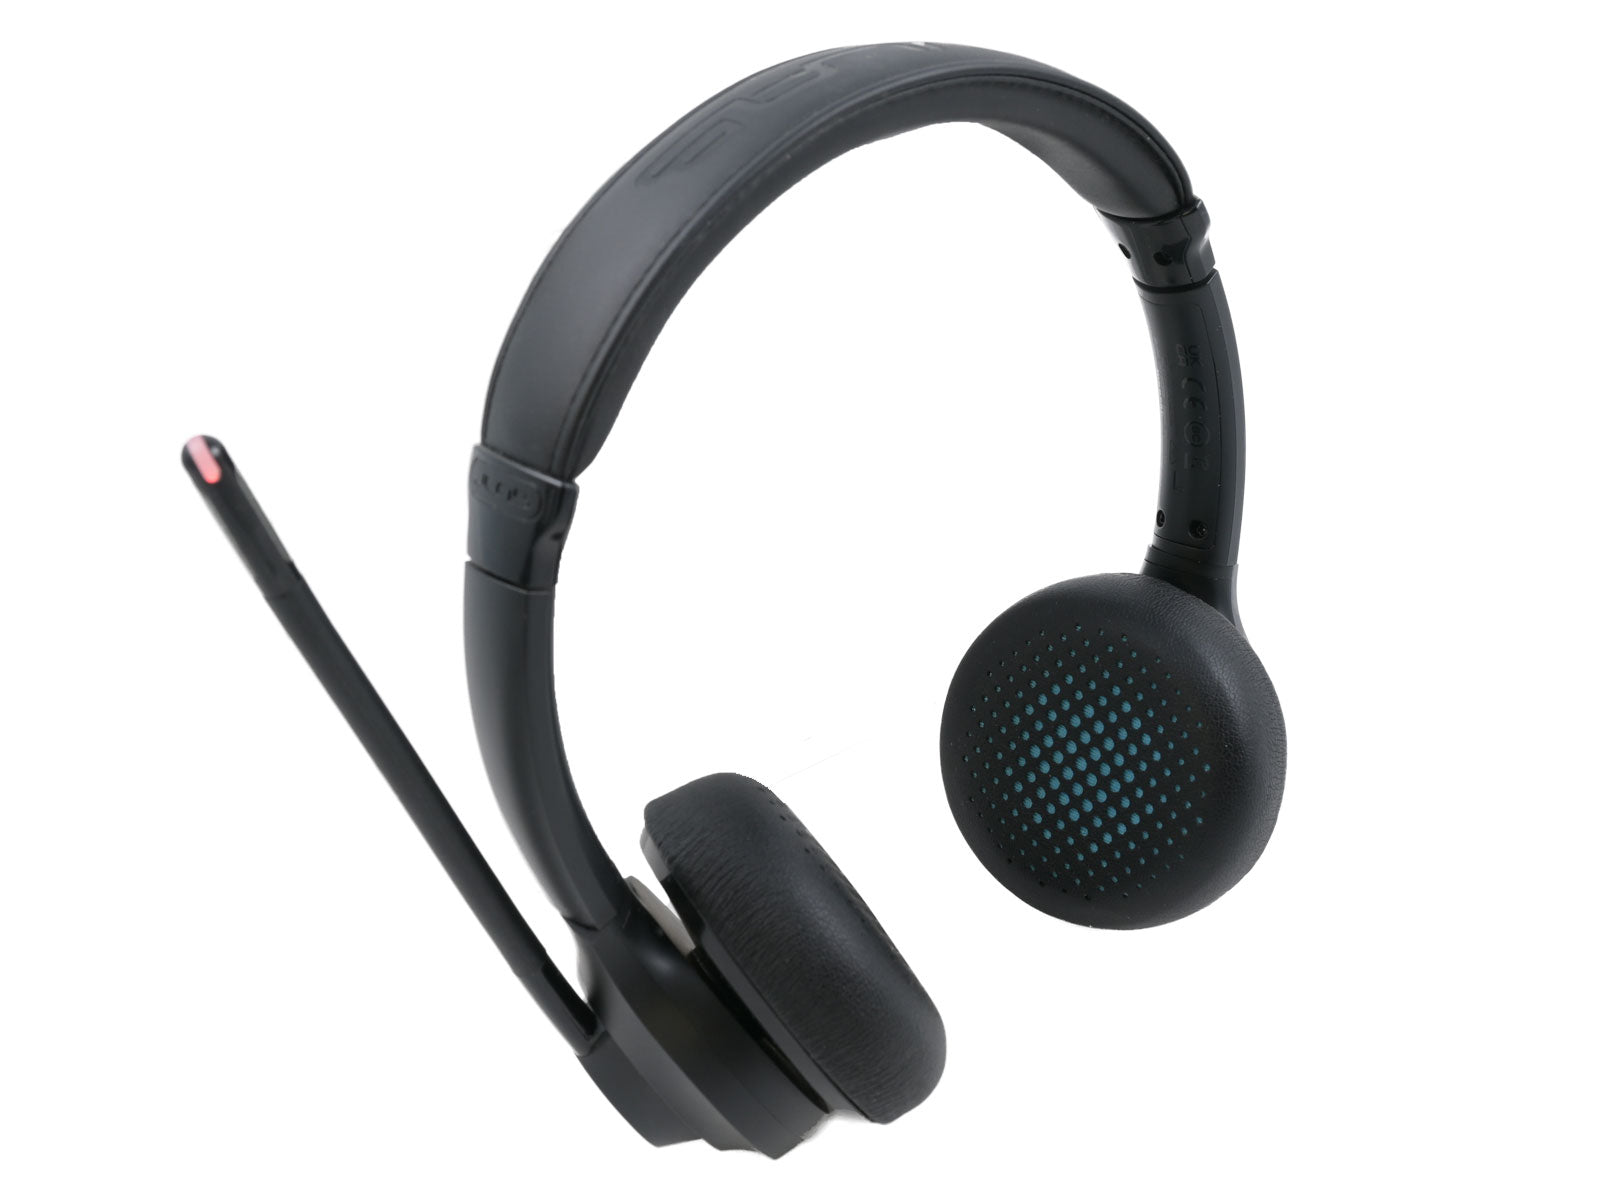 JLab Go Work Wireless & Wired On-Ear Headset Schwarzer Over-Ear-Kopfhörer mit gepolstertem Kopfbügel und integriertem Mikrofon mit Mute-Leuchte vor der rechten Ohrmuschel. Die Ohrmuscheln verfügen über ein perforiertes Design mit sichtbaren blauen Akzenten.